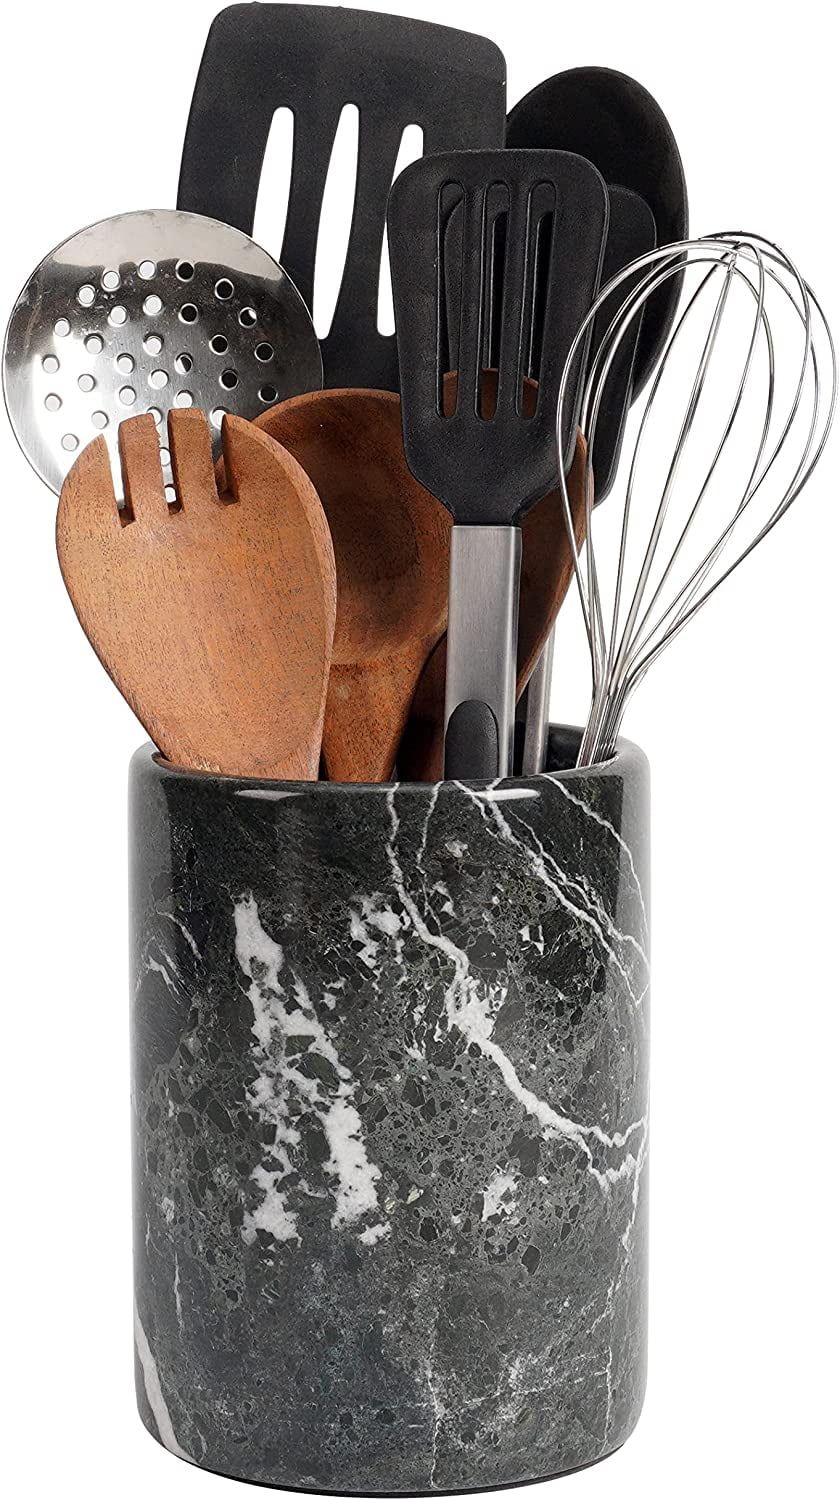 Utensil Holder Spoon Caddy Countertop Black Handmade Marble kitchen Utensils set organizer - 5.5x... | Walmart (US)